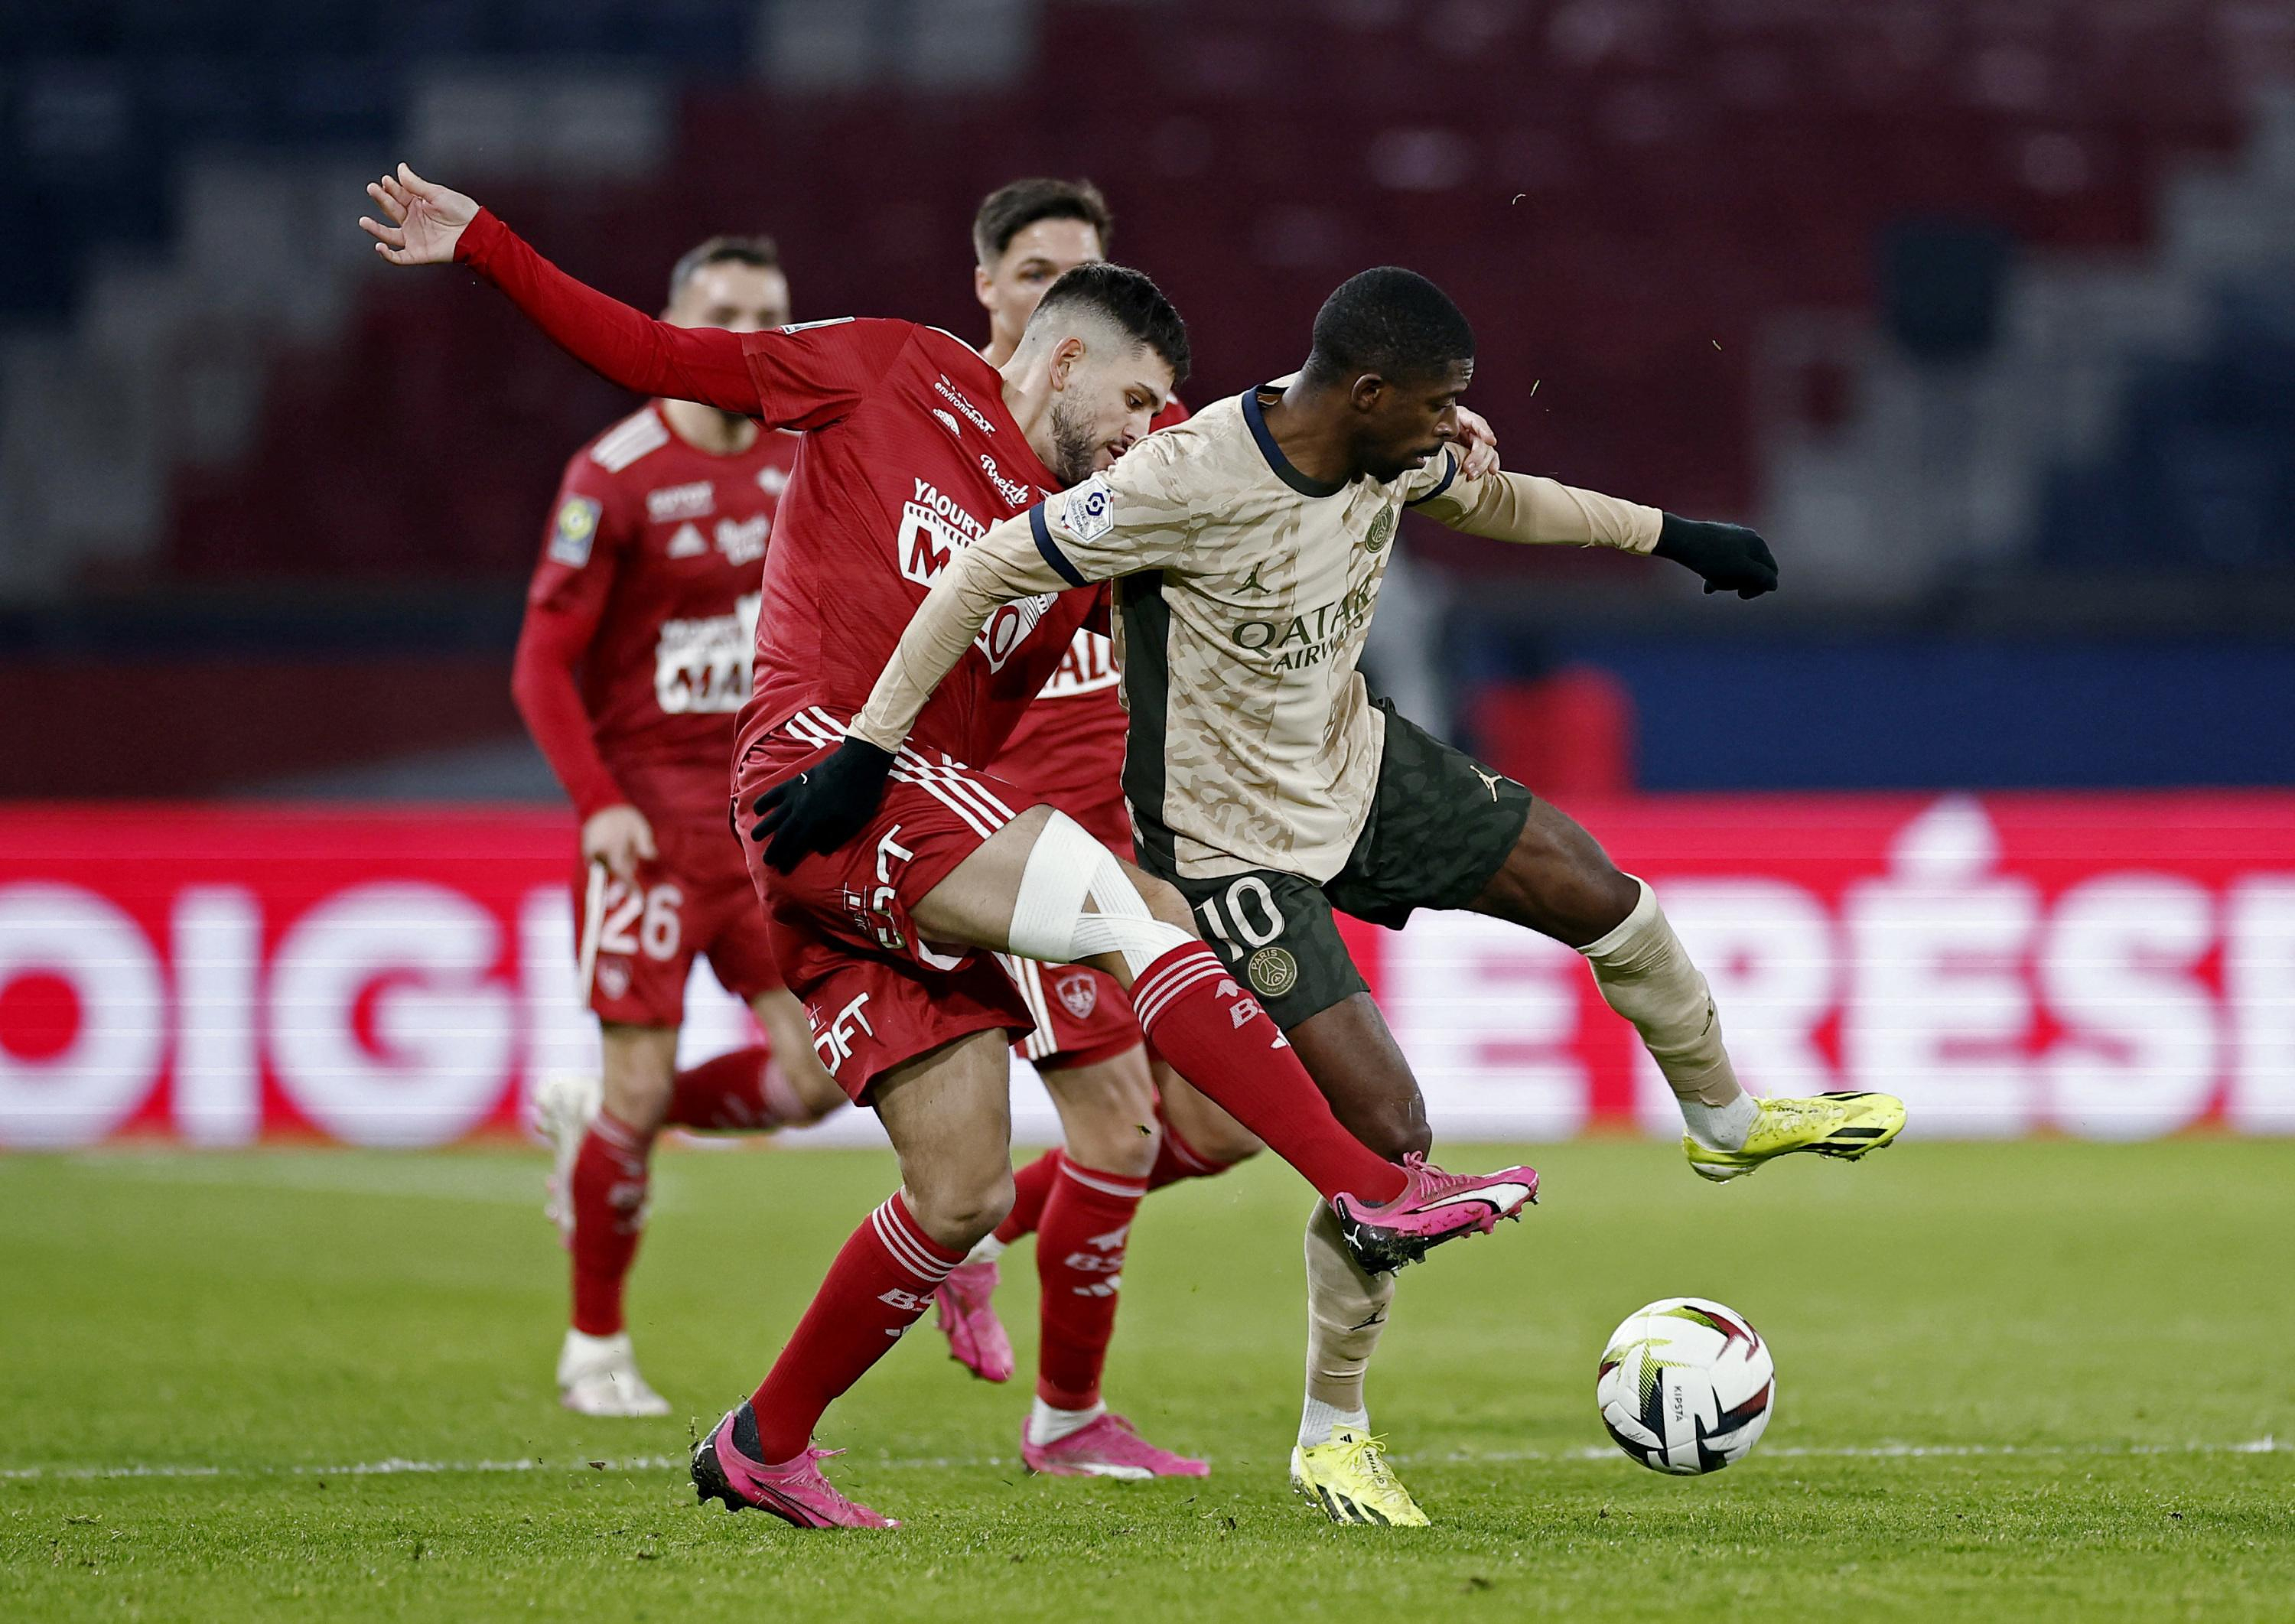 Coupe de France: Dembélé, Hakimi and Barcola back in PSG’s 11